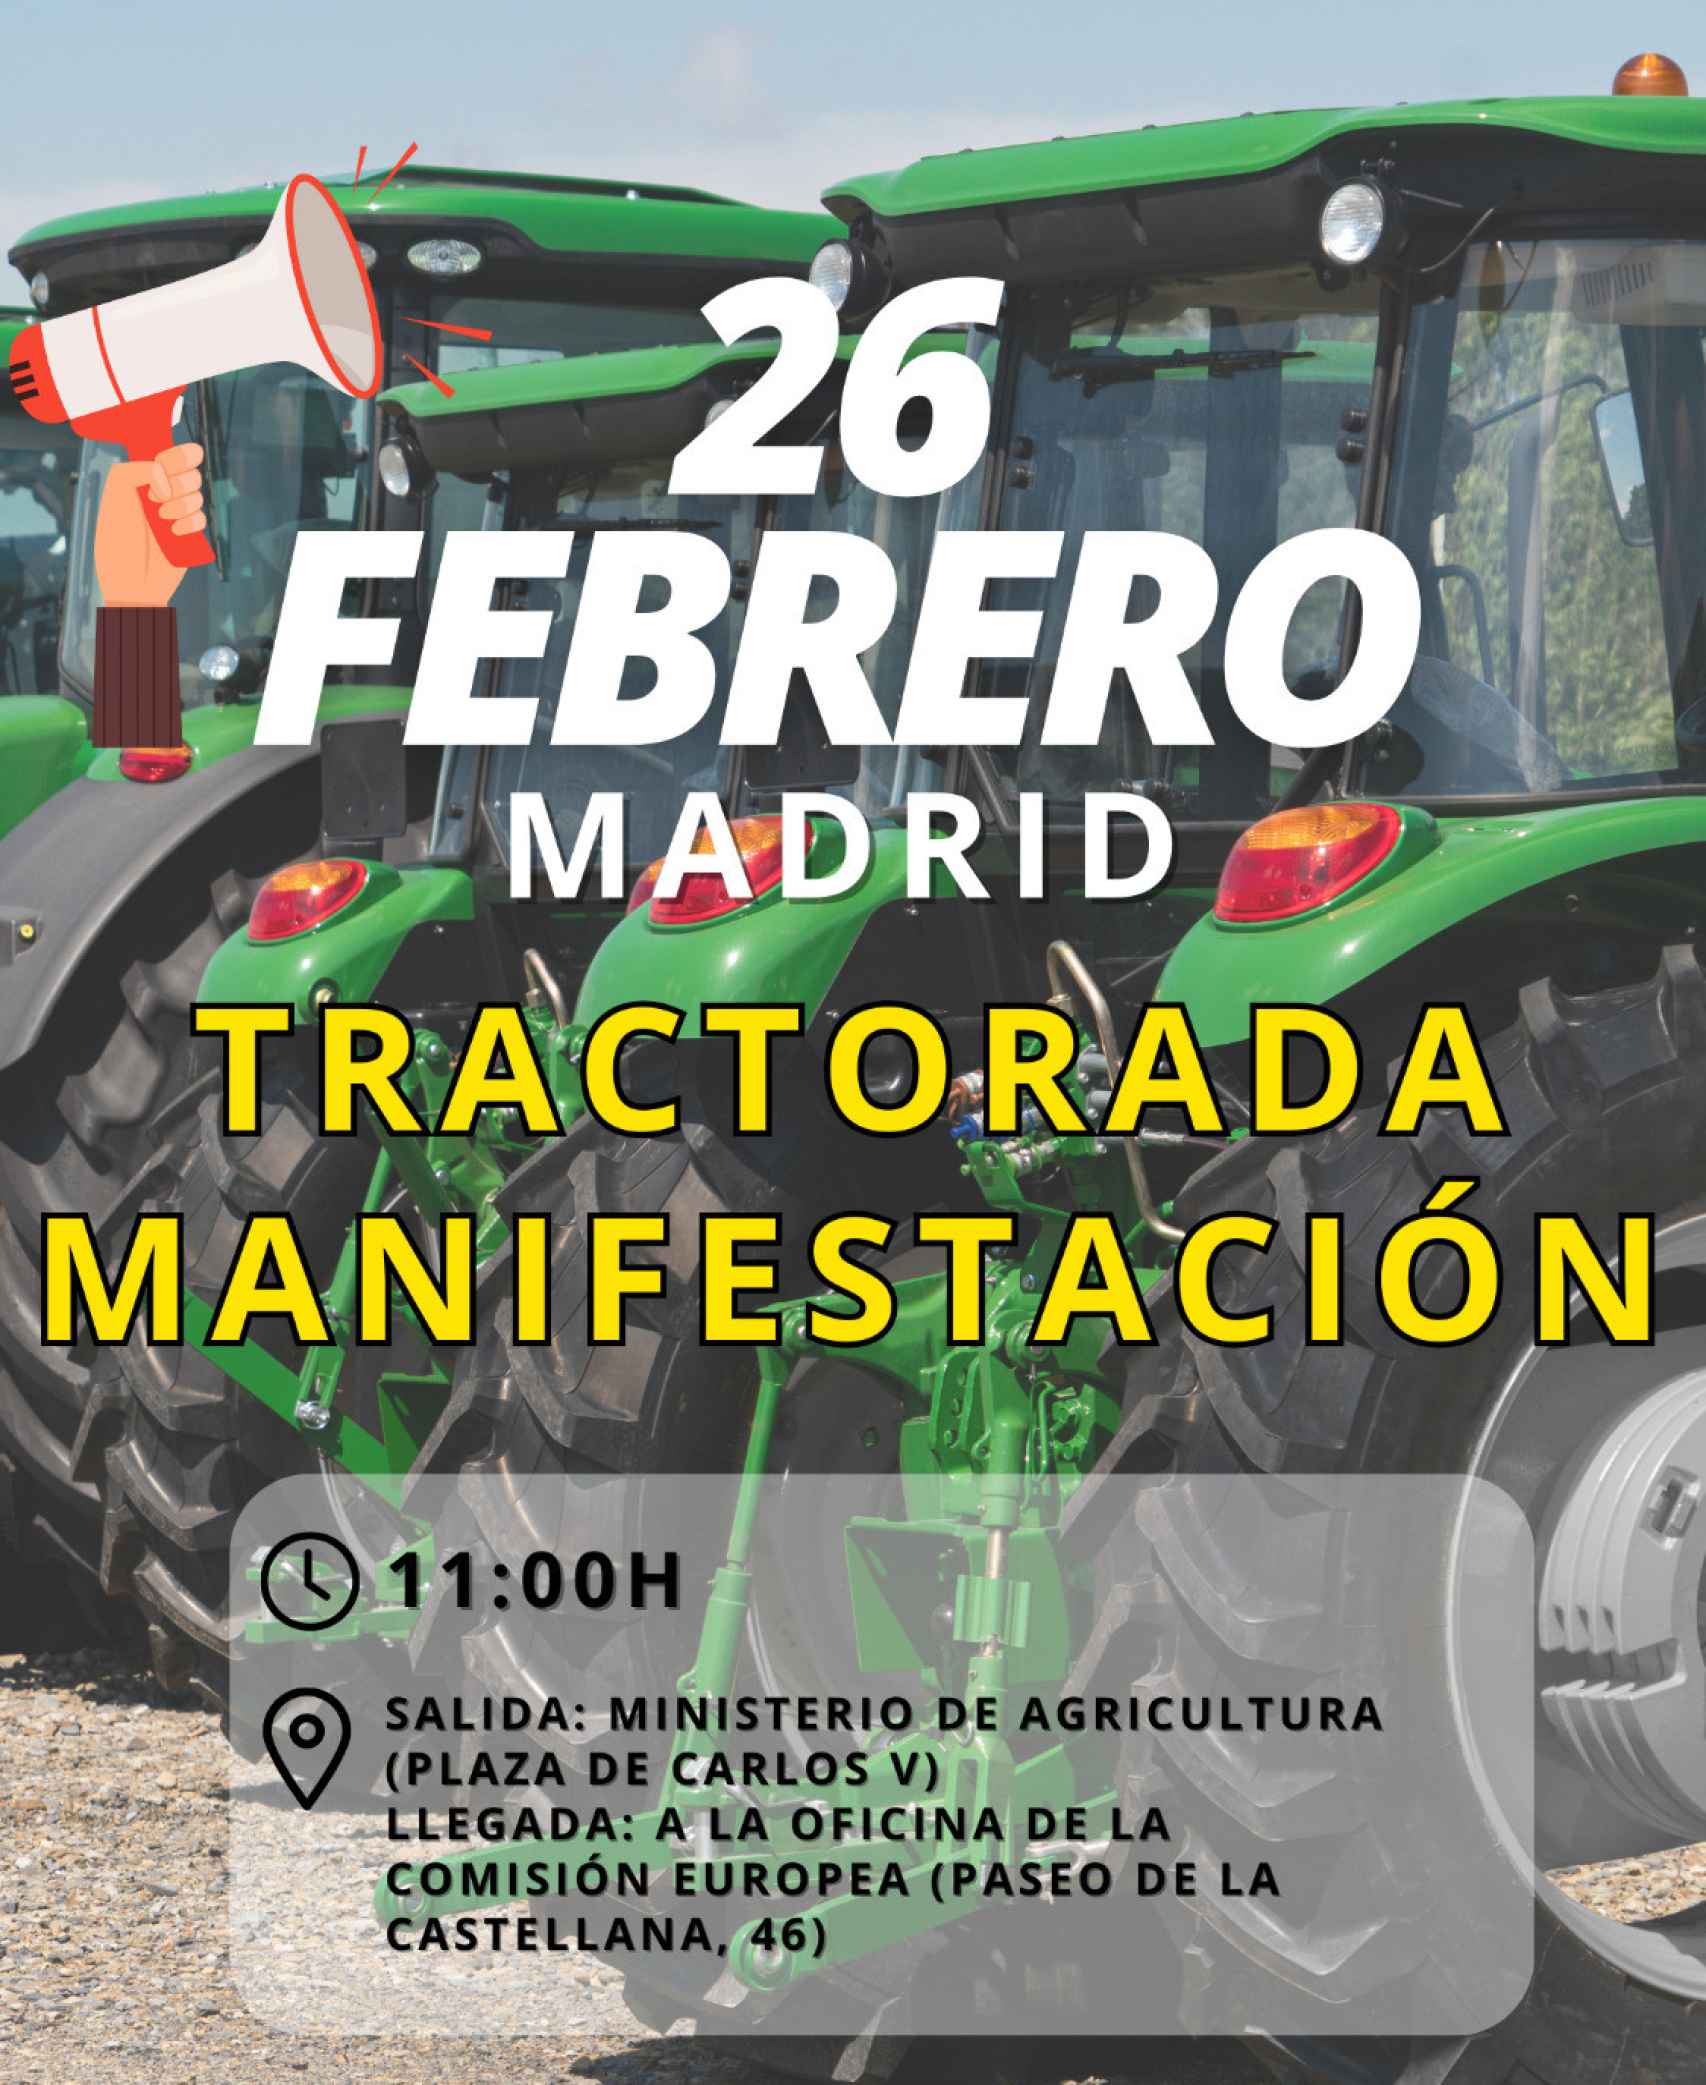 Manifestación en Madrid el próximo 26 de febrero